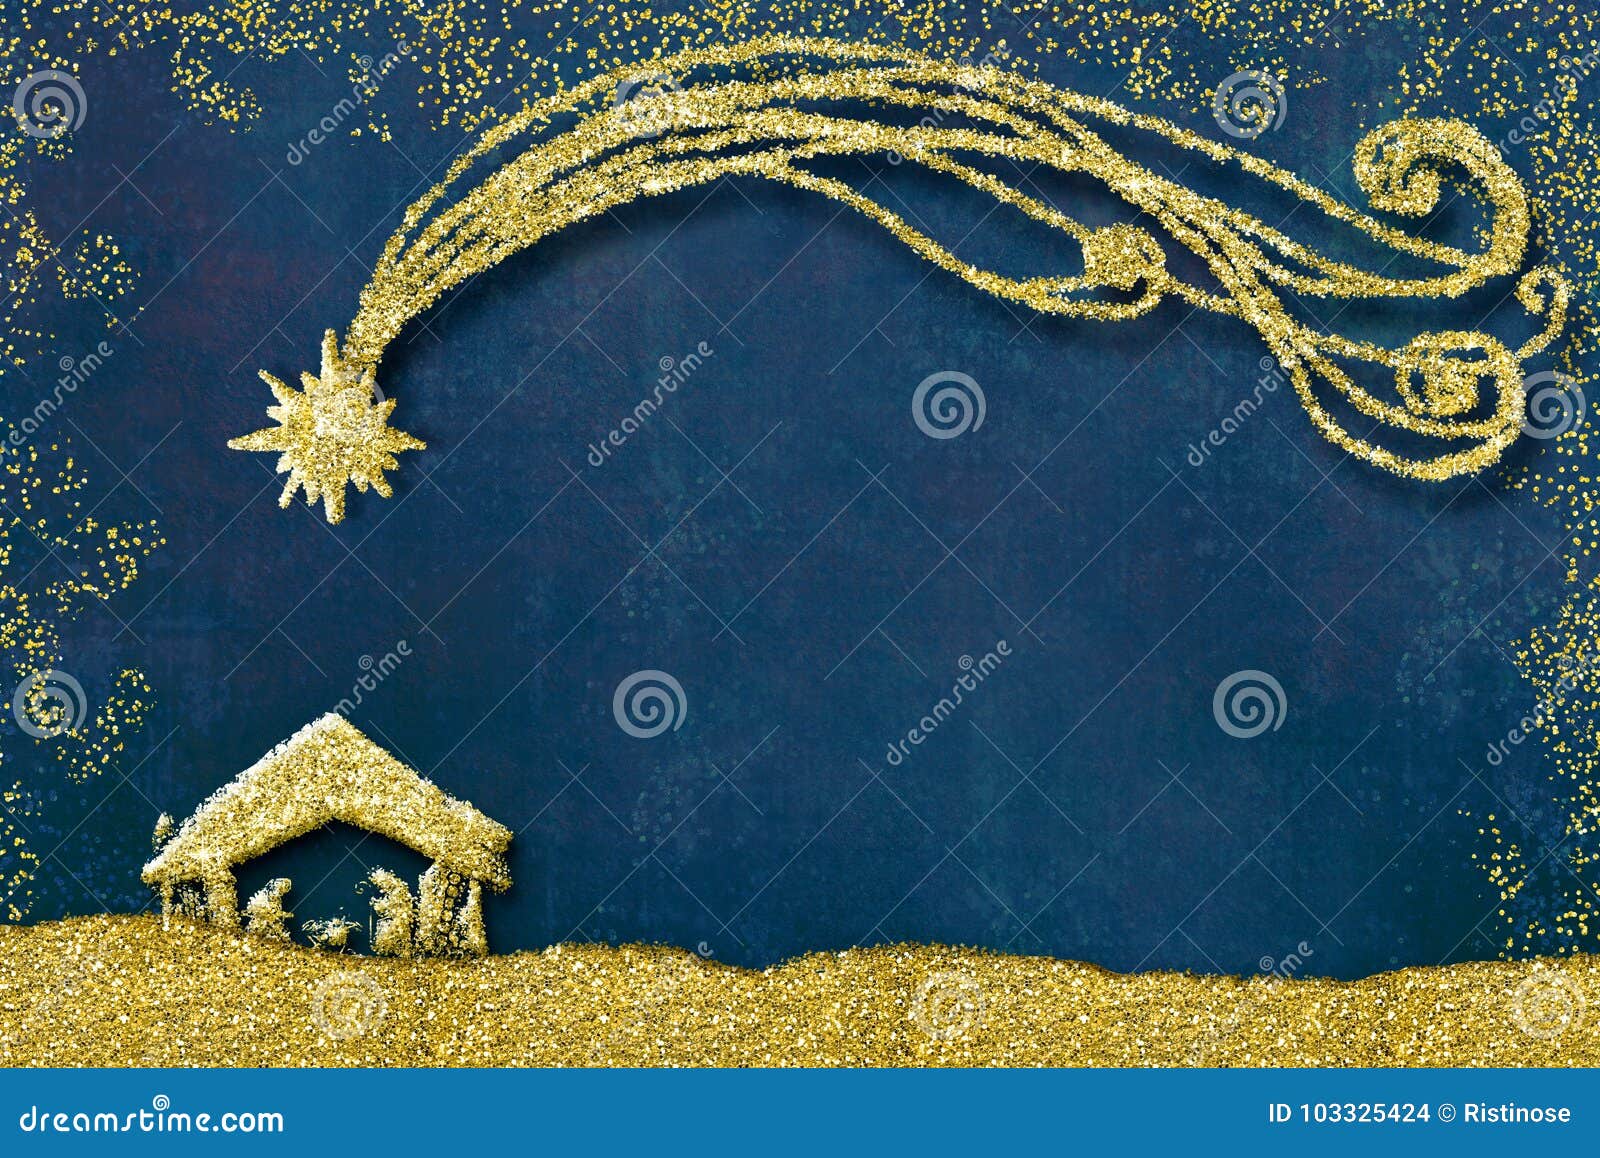 Natale Nativita.Cartoline D Auguri Di Scena Di Nativita Di Natale Illustrazione Di Stock Illustrazione Di Mary Santo 103325424